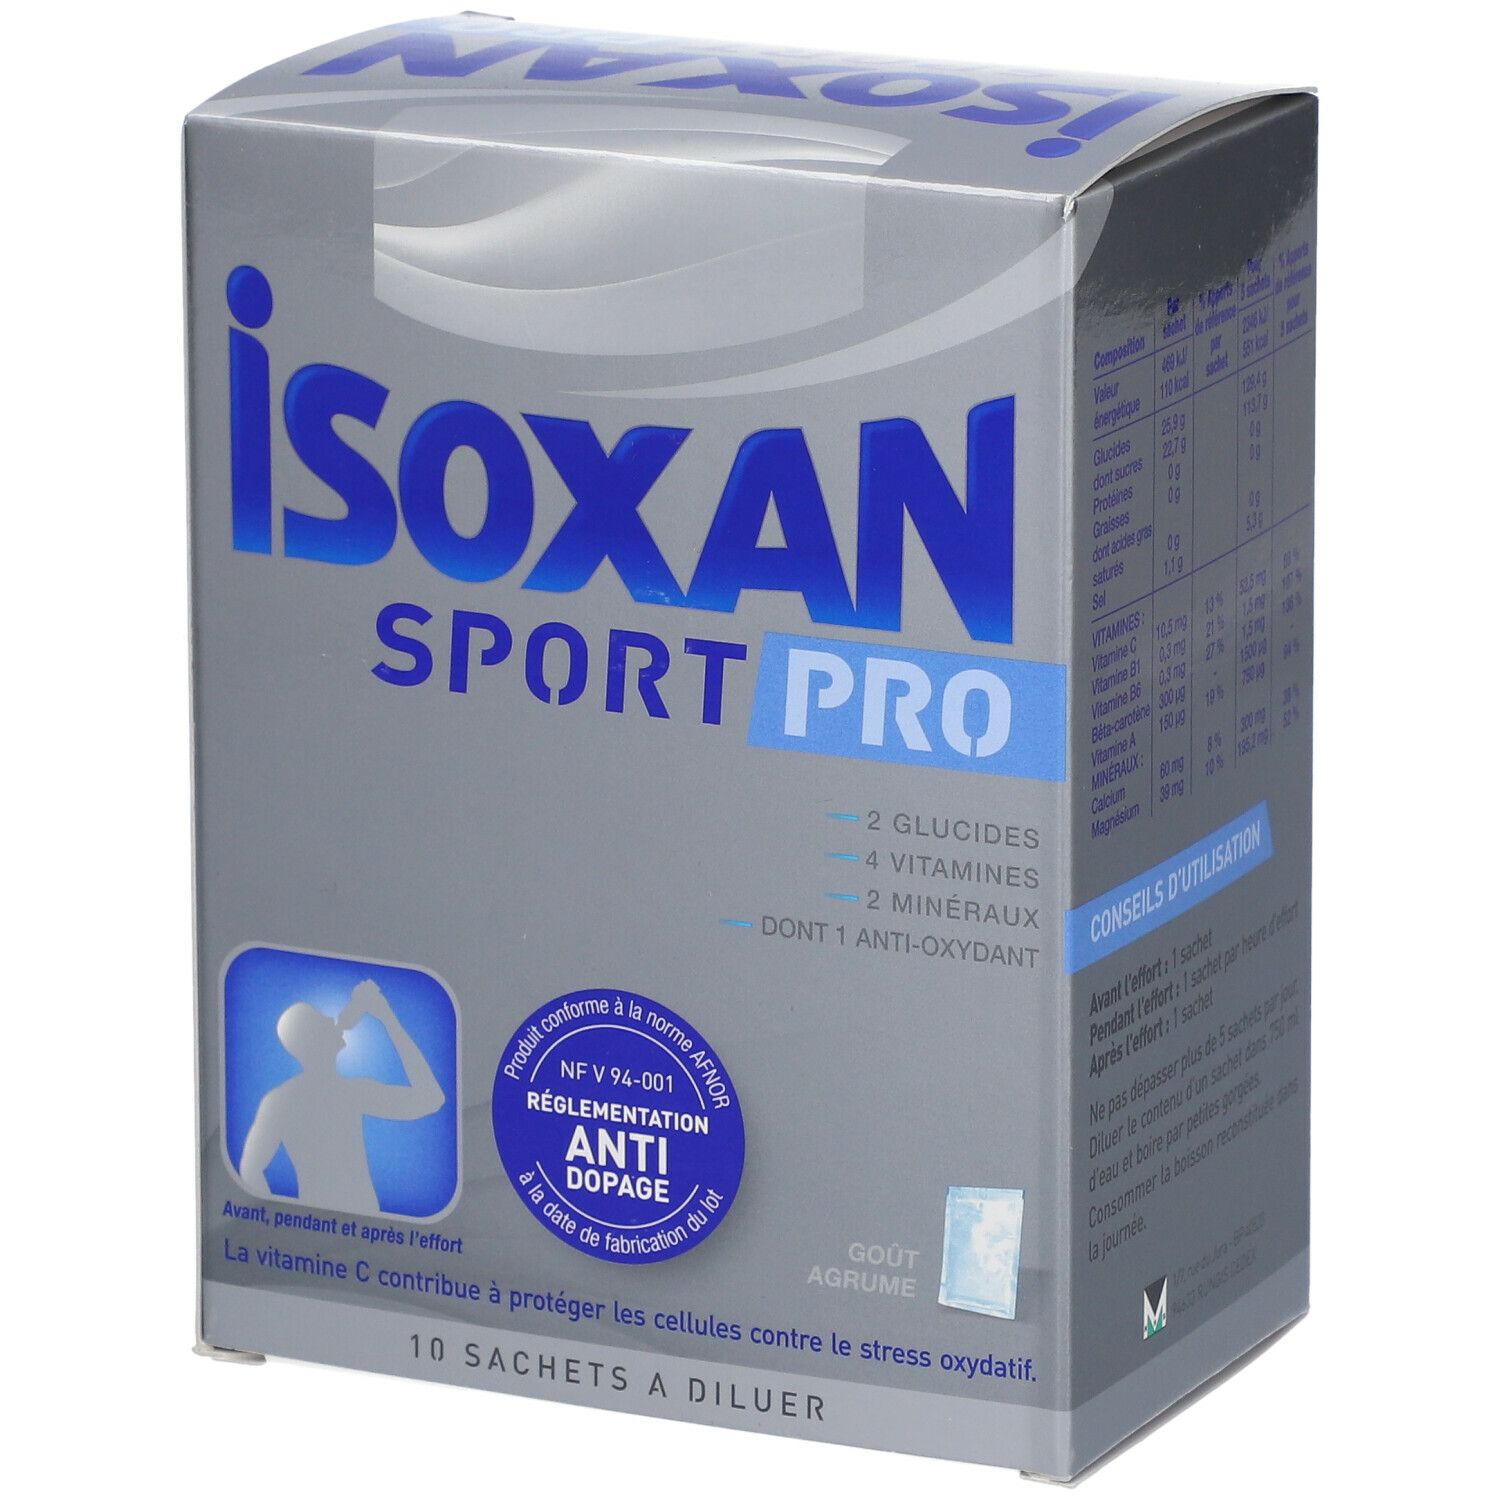 Image of Isoxan Pro